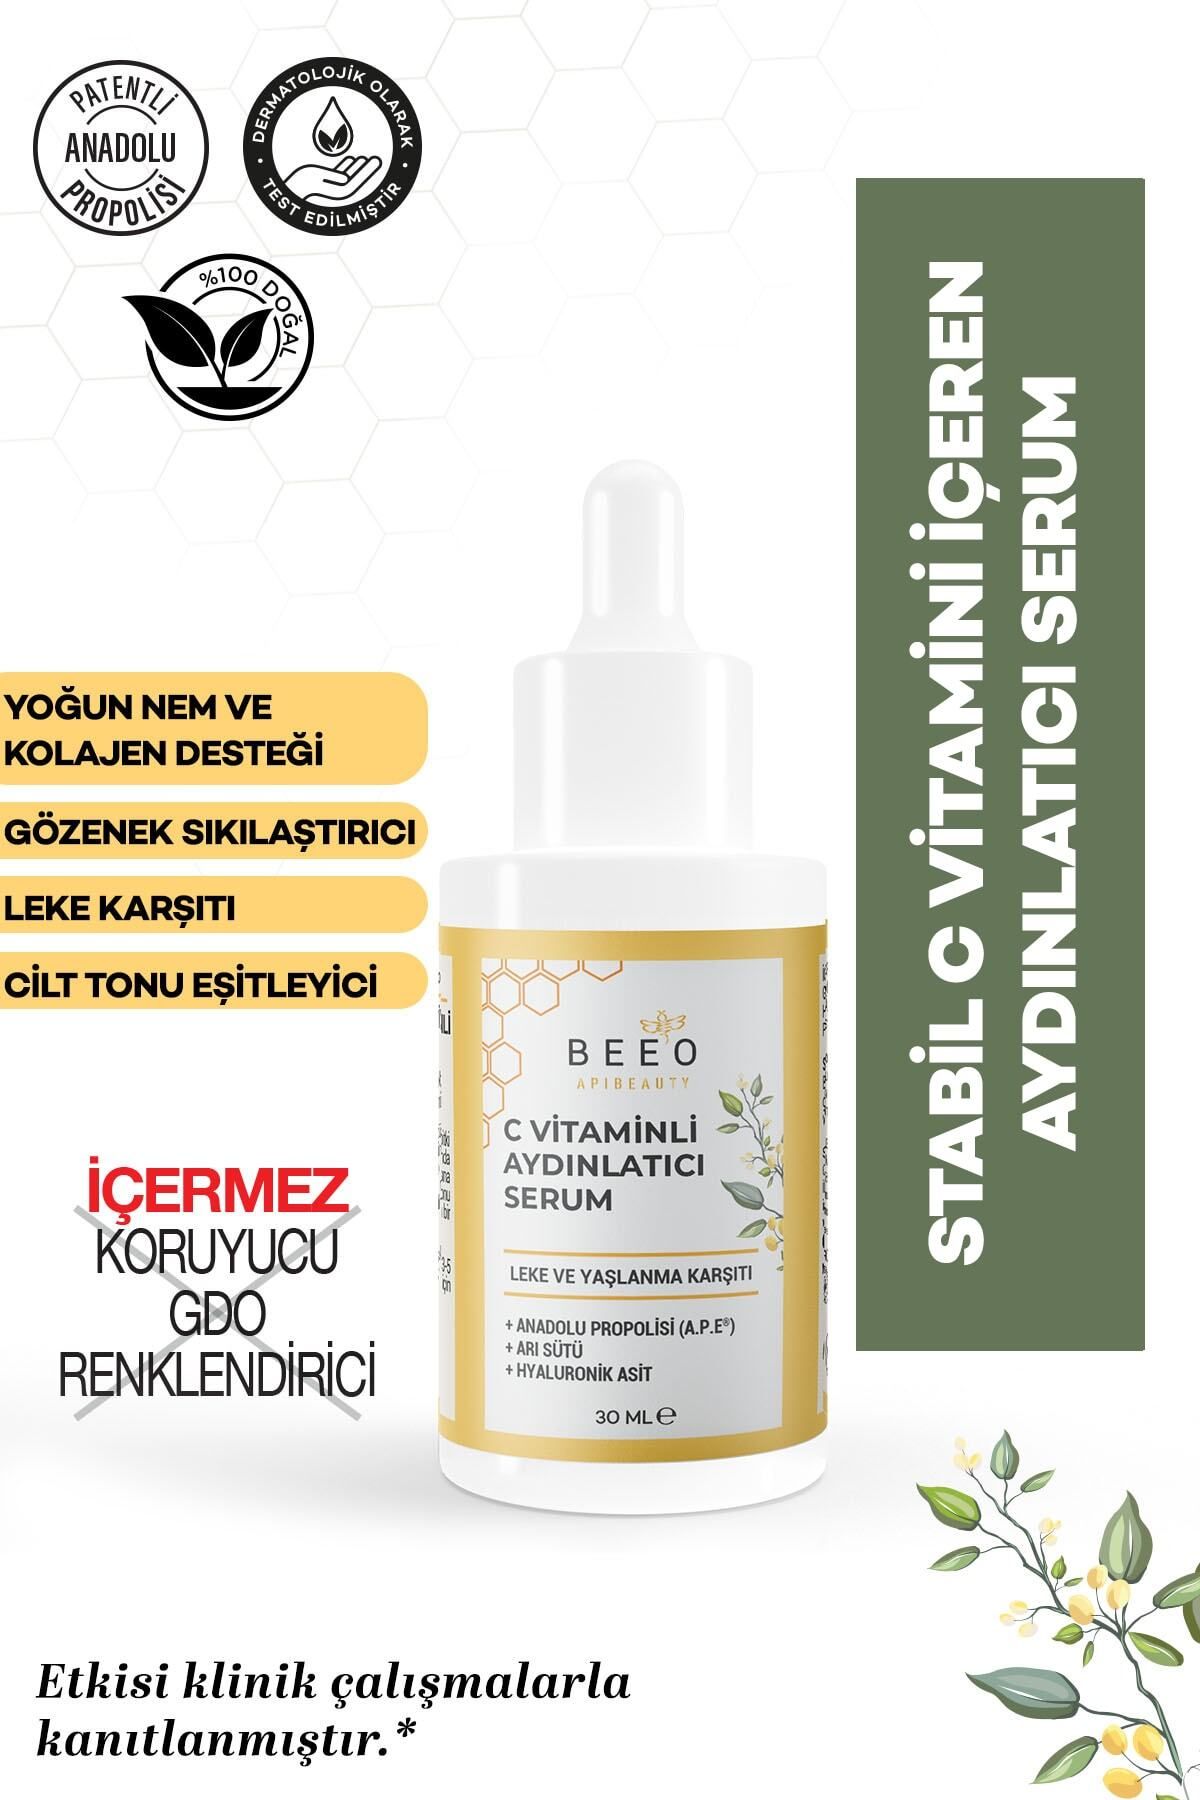 Beeo Cilt Tonu Eşitleyici & Aydınlatıcı C Vitaminli Serum 30 ml